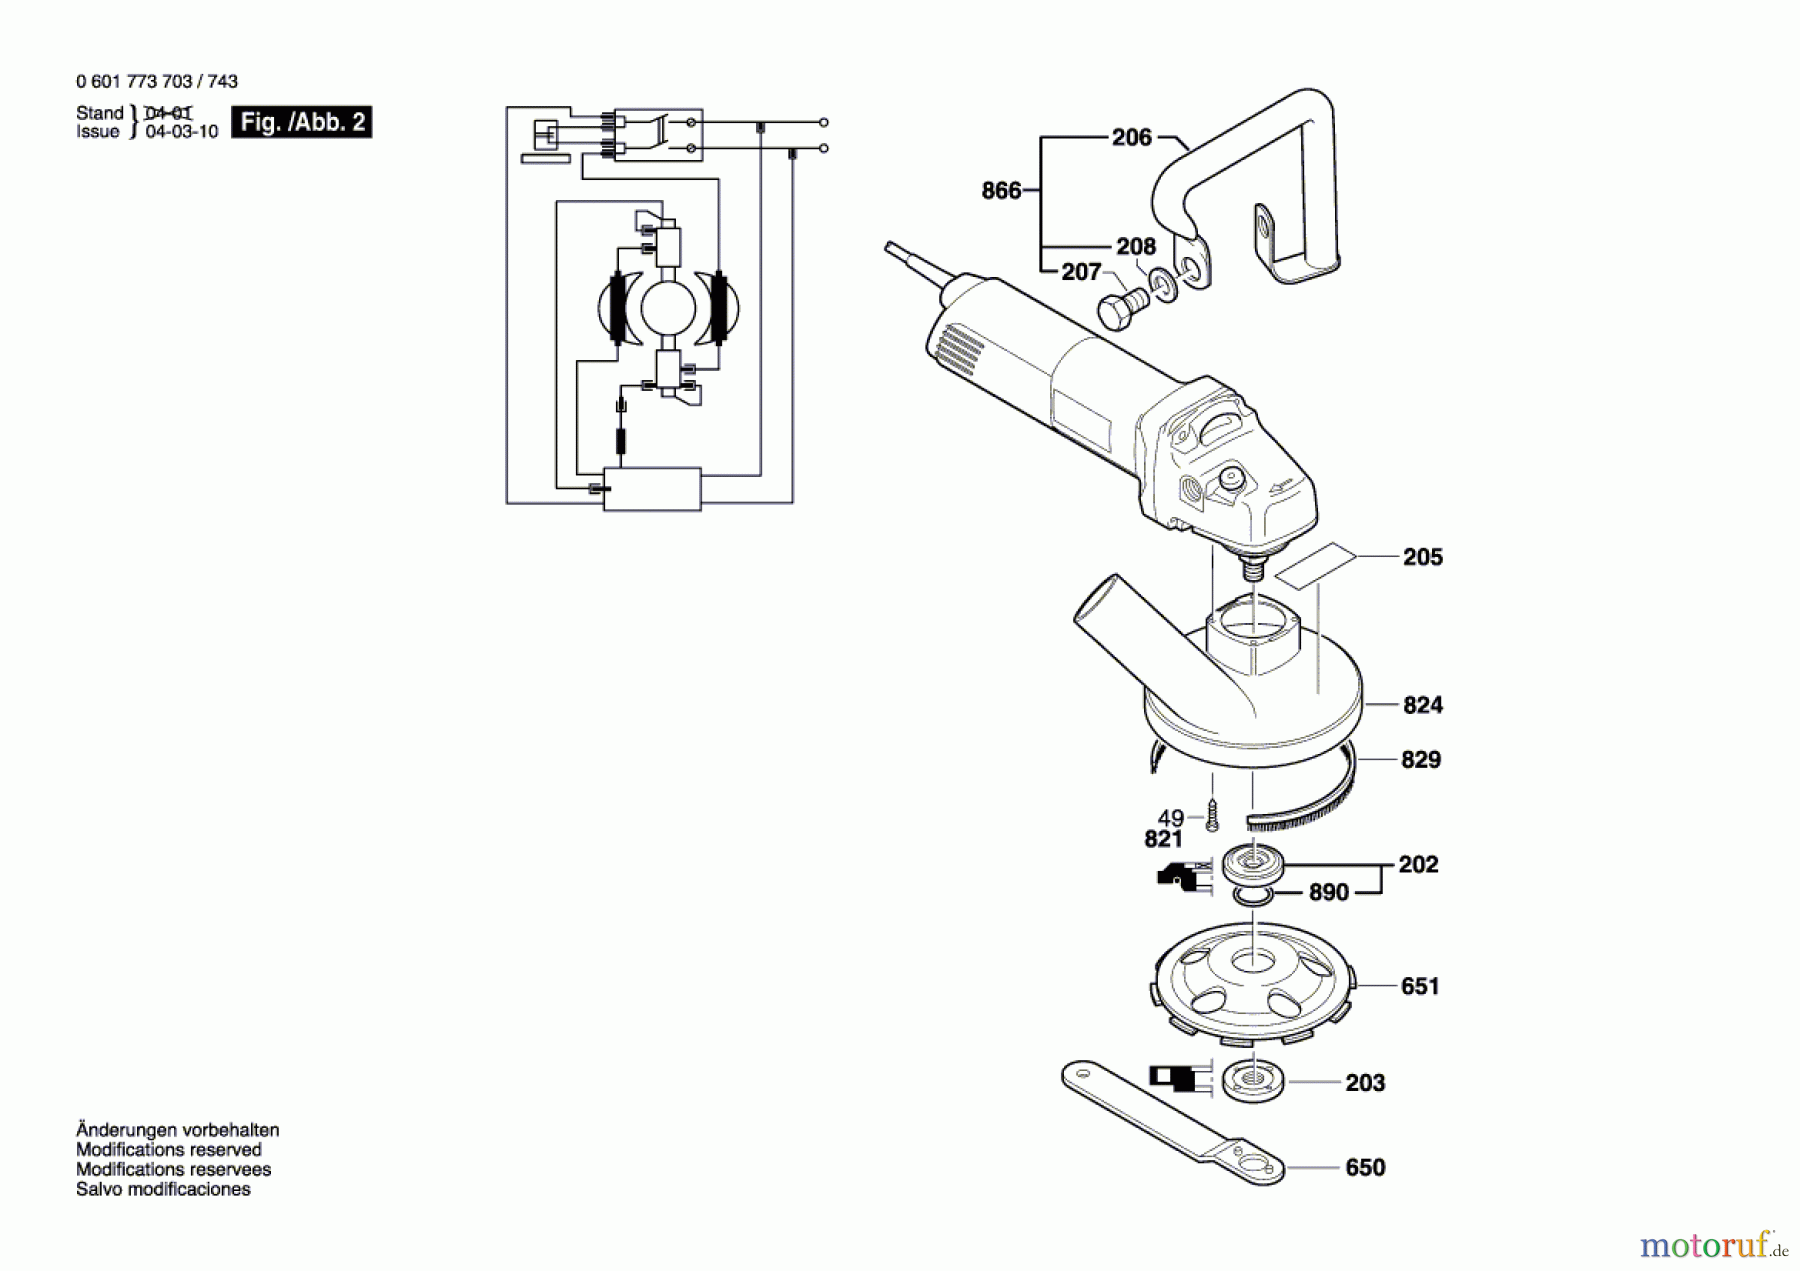  Bosch Werkzeug Betonschleifer GBR 14 CA Seite 2